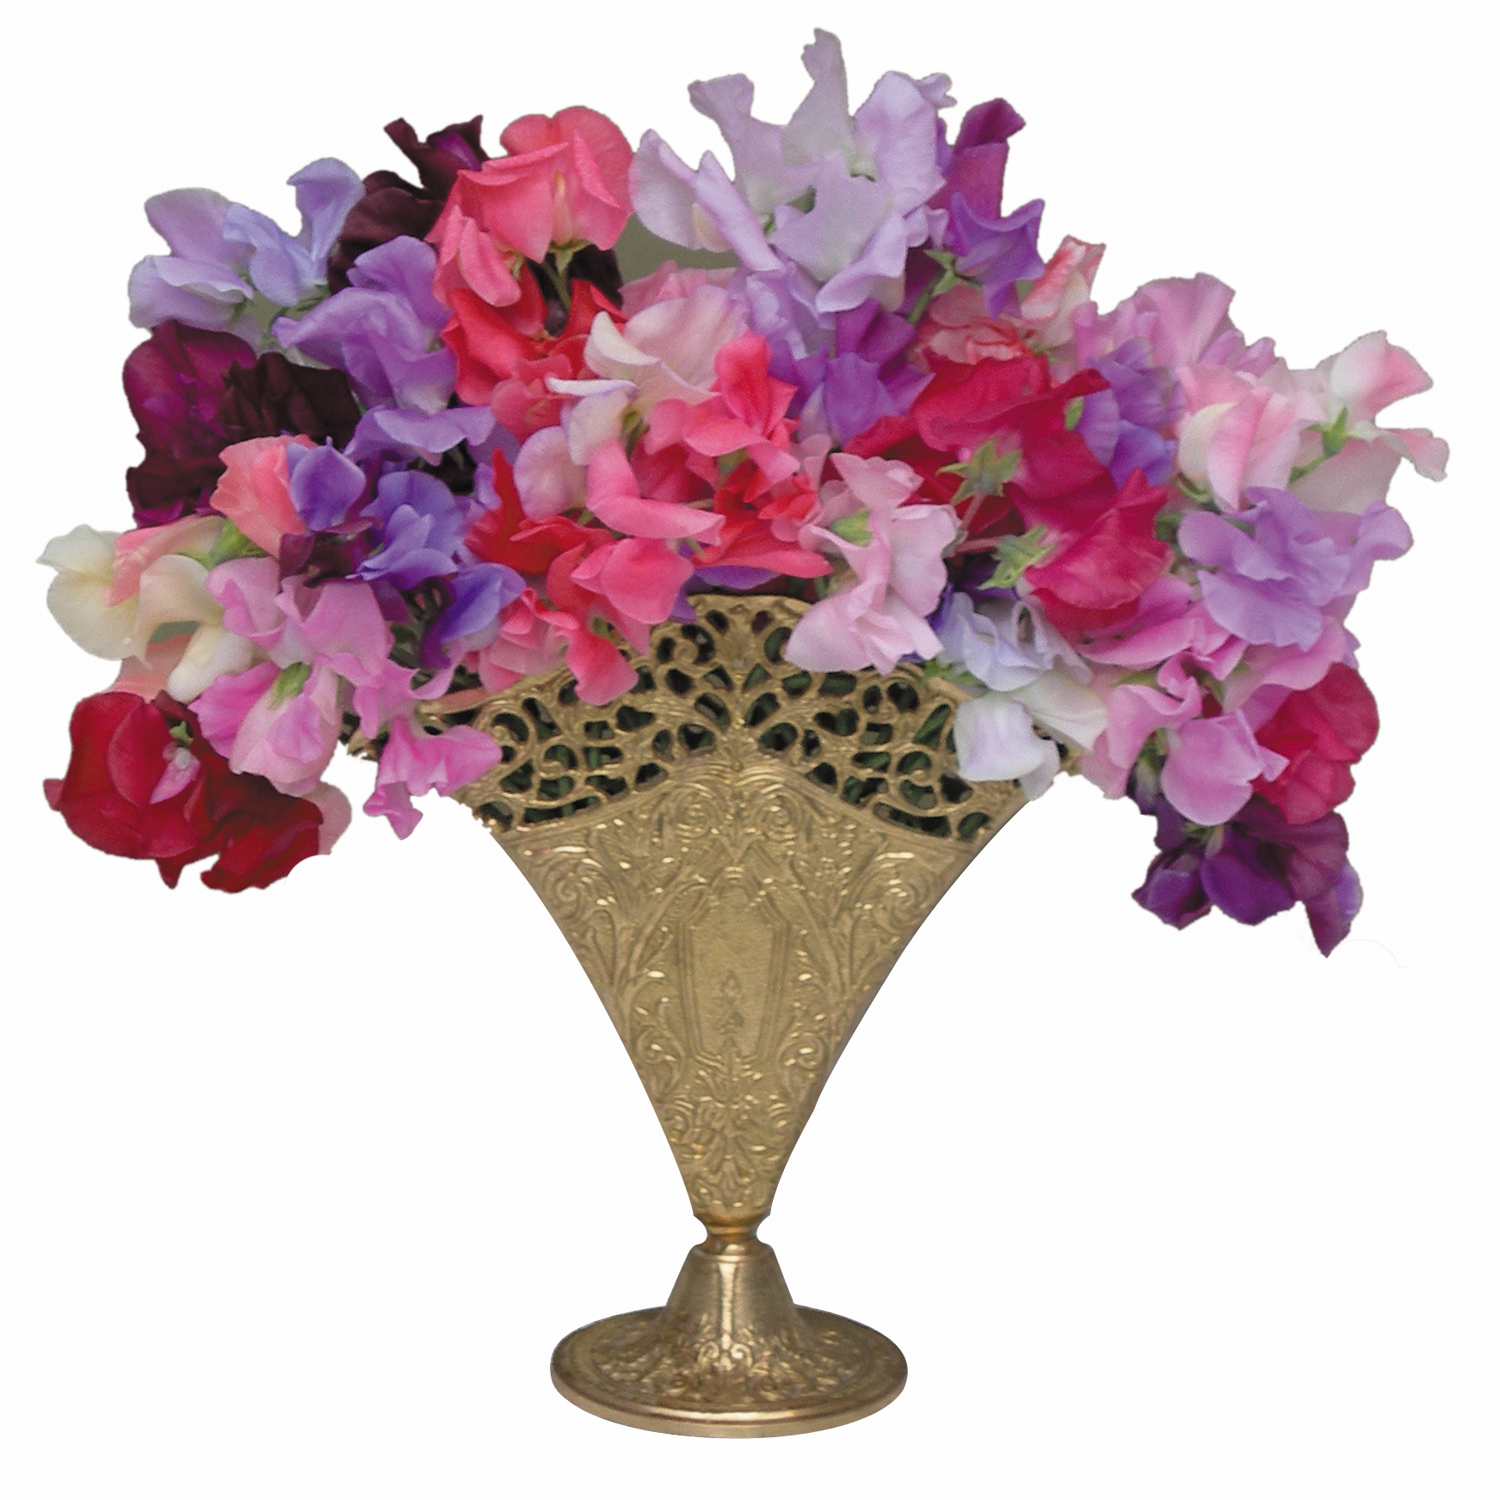 Mixed Variety Vase